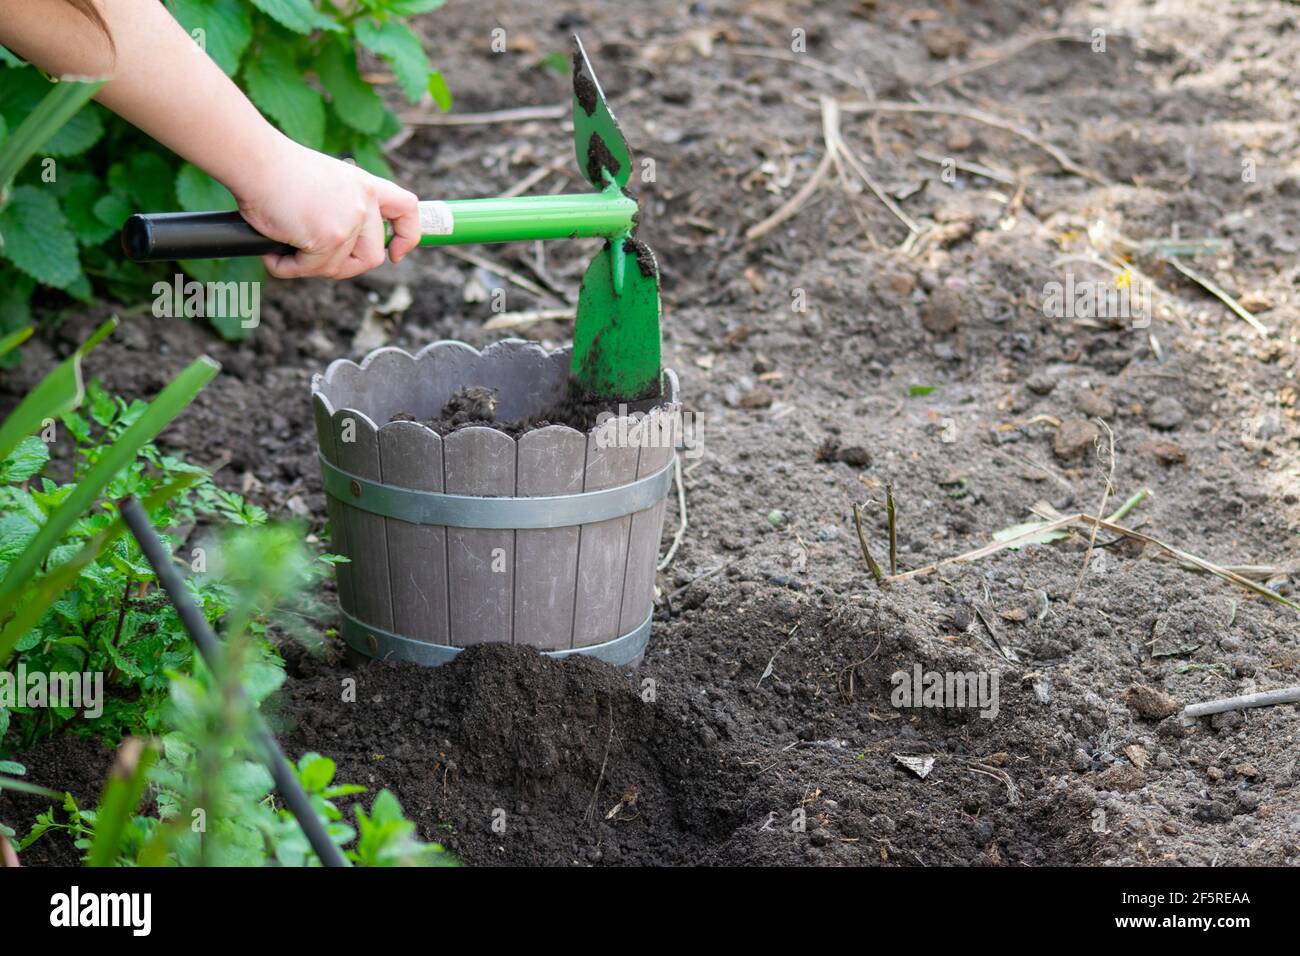 Los niños en el hogar que cultivan un huerto, aprendiendo a cultivar verduras y plantas. Uso de herramientas de jardín, instrucciones de jardinería y la enseñanza de jardinería Foto de stock